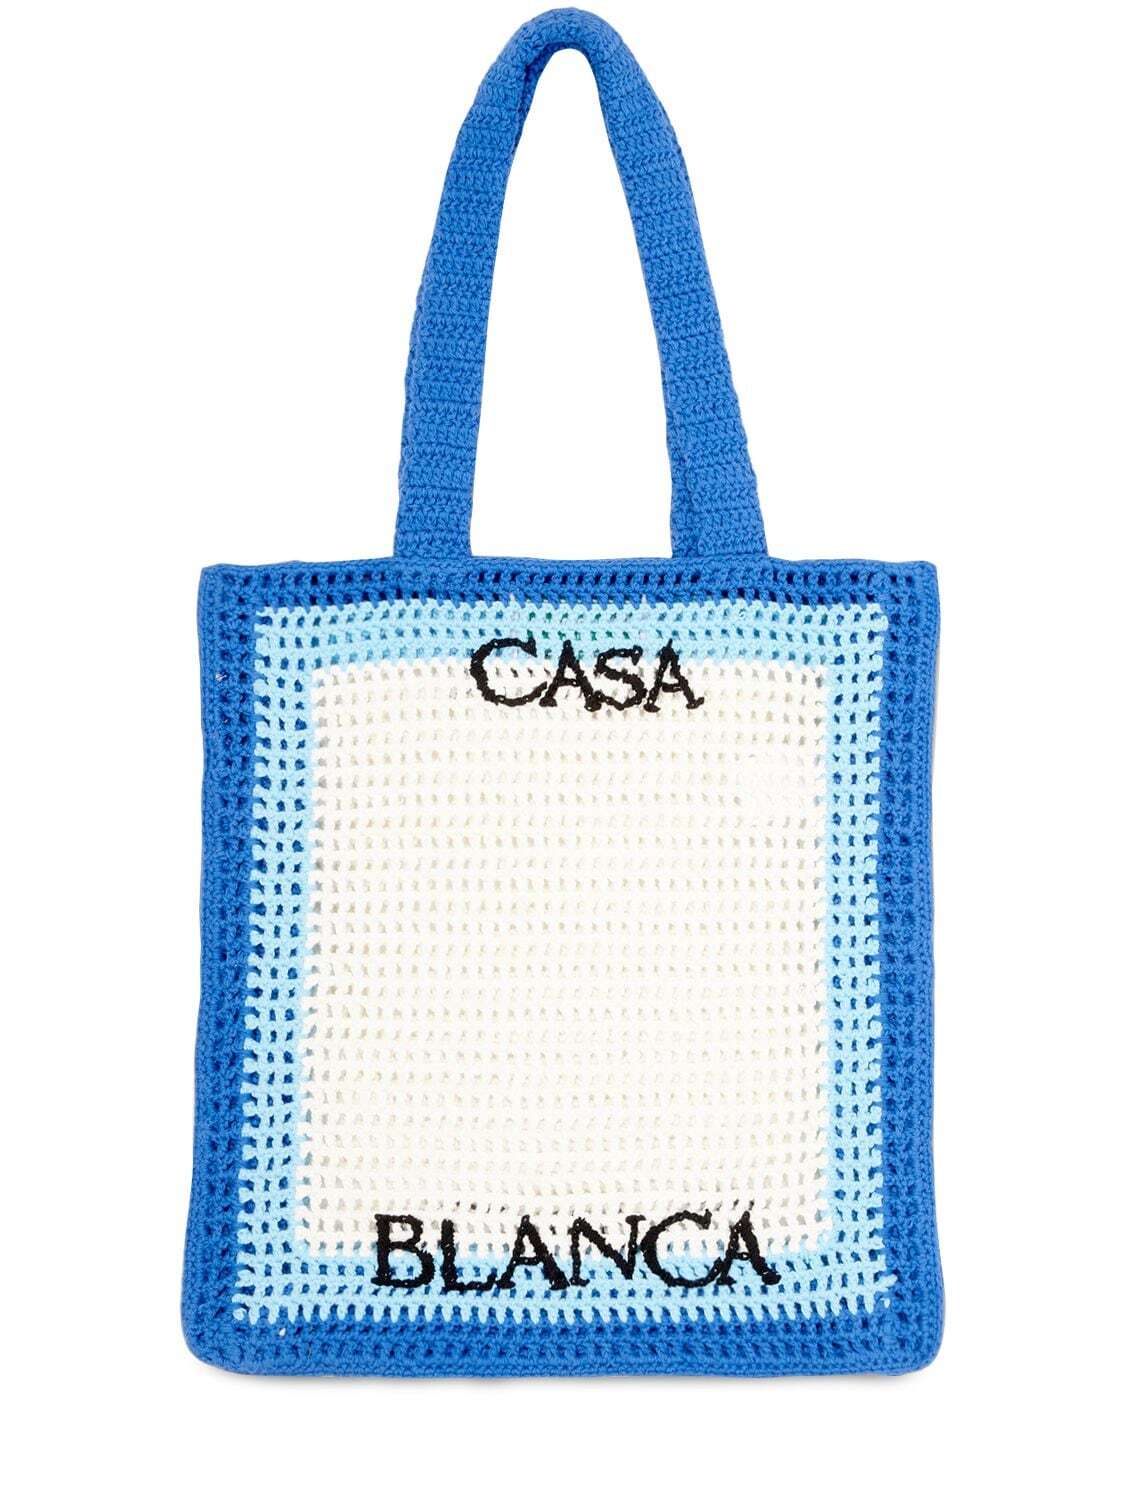 CASABLANCA Crochet Atlantis Tote Bag in blue / white